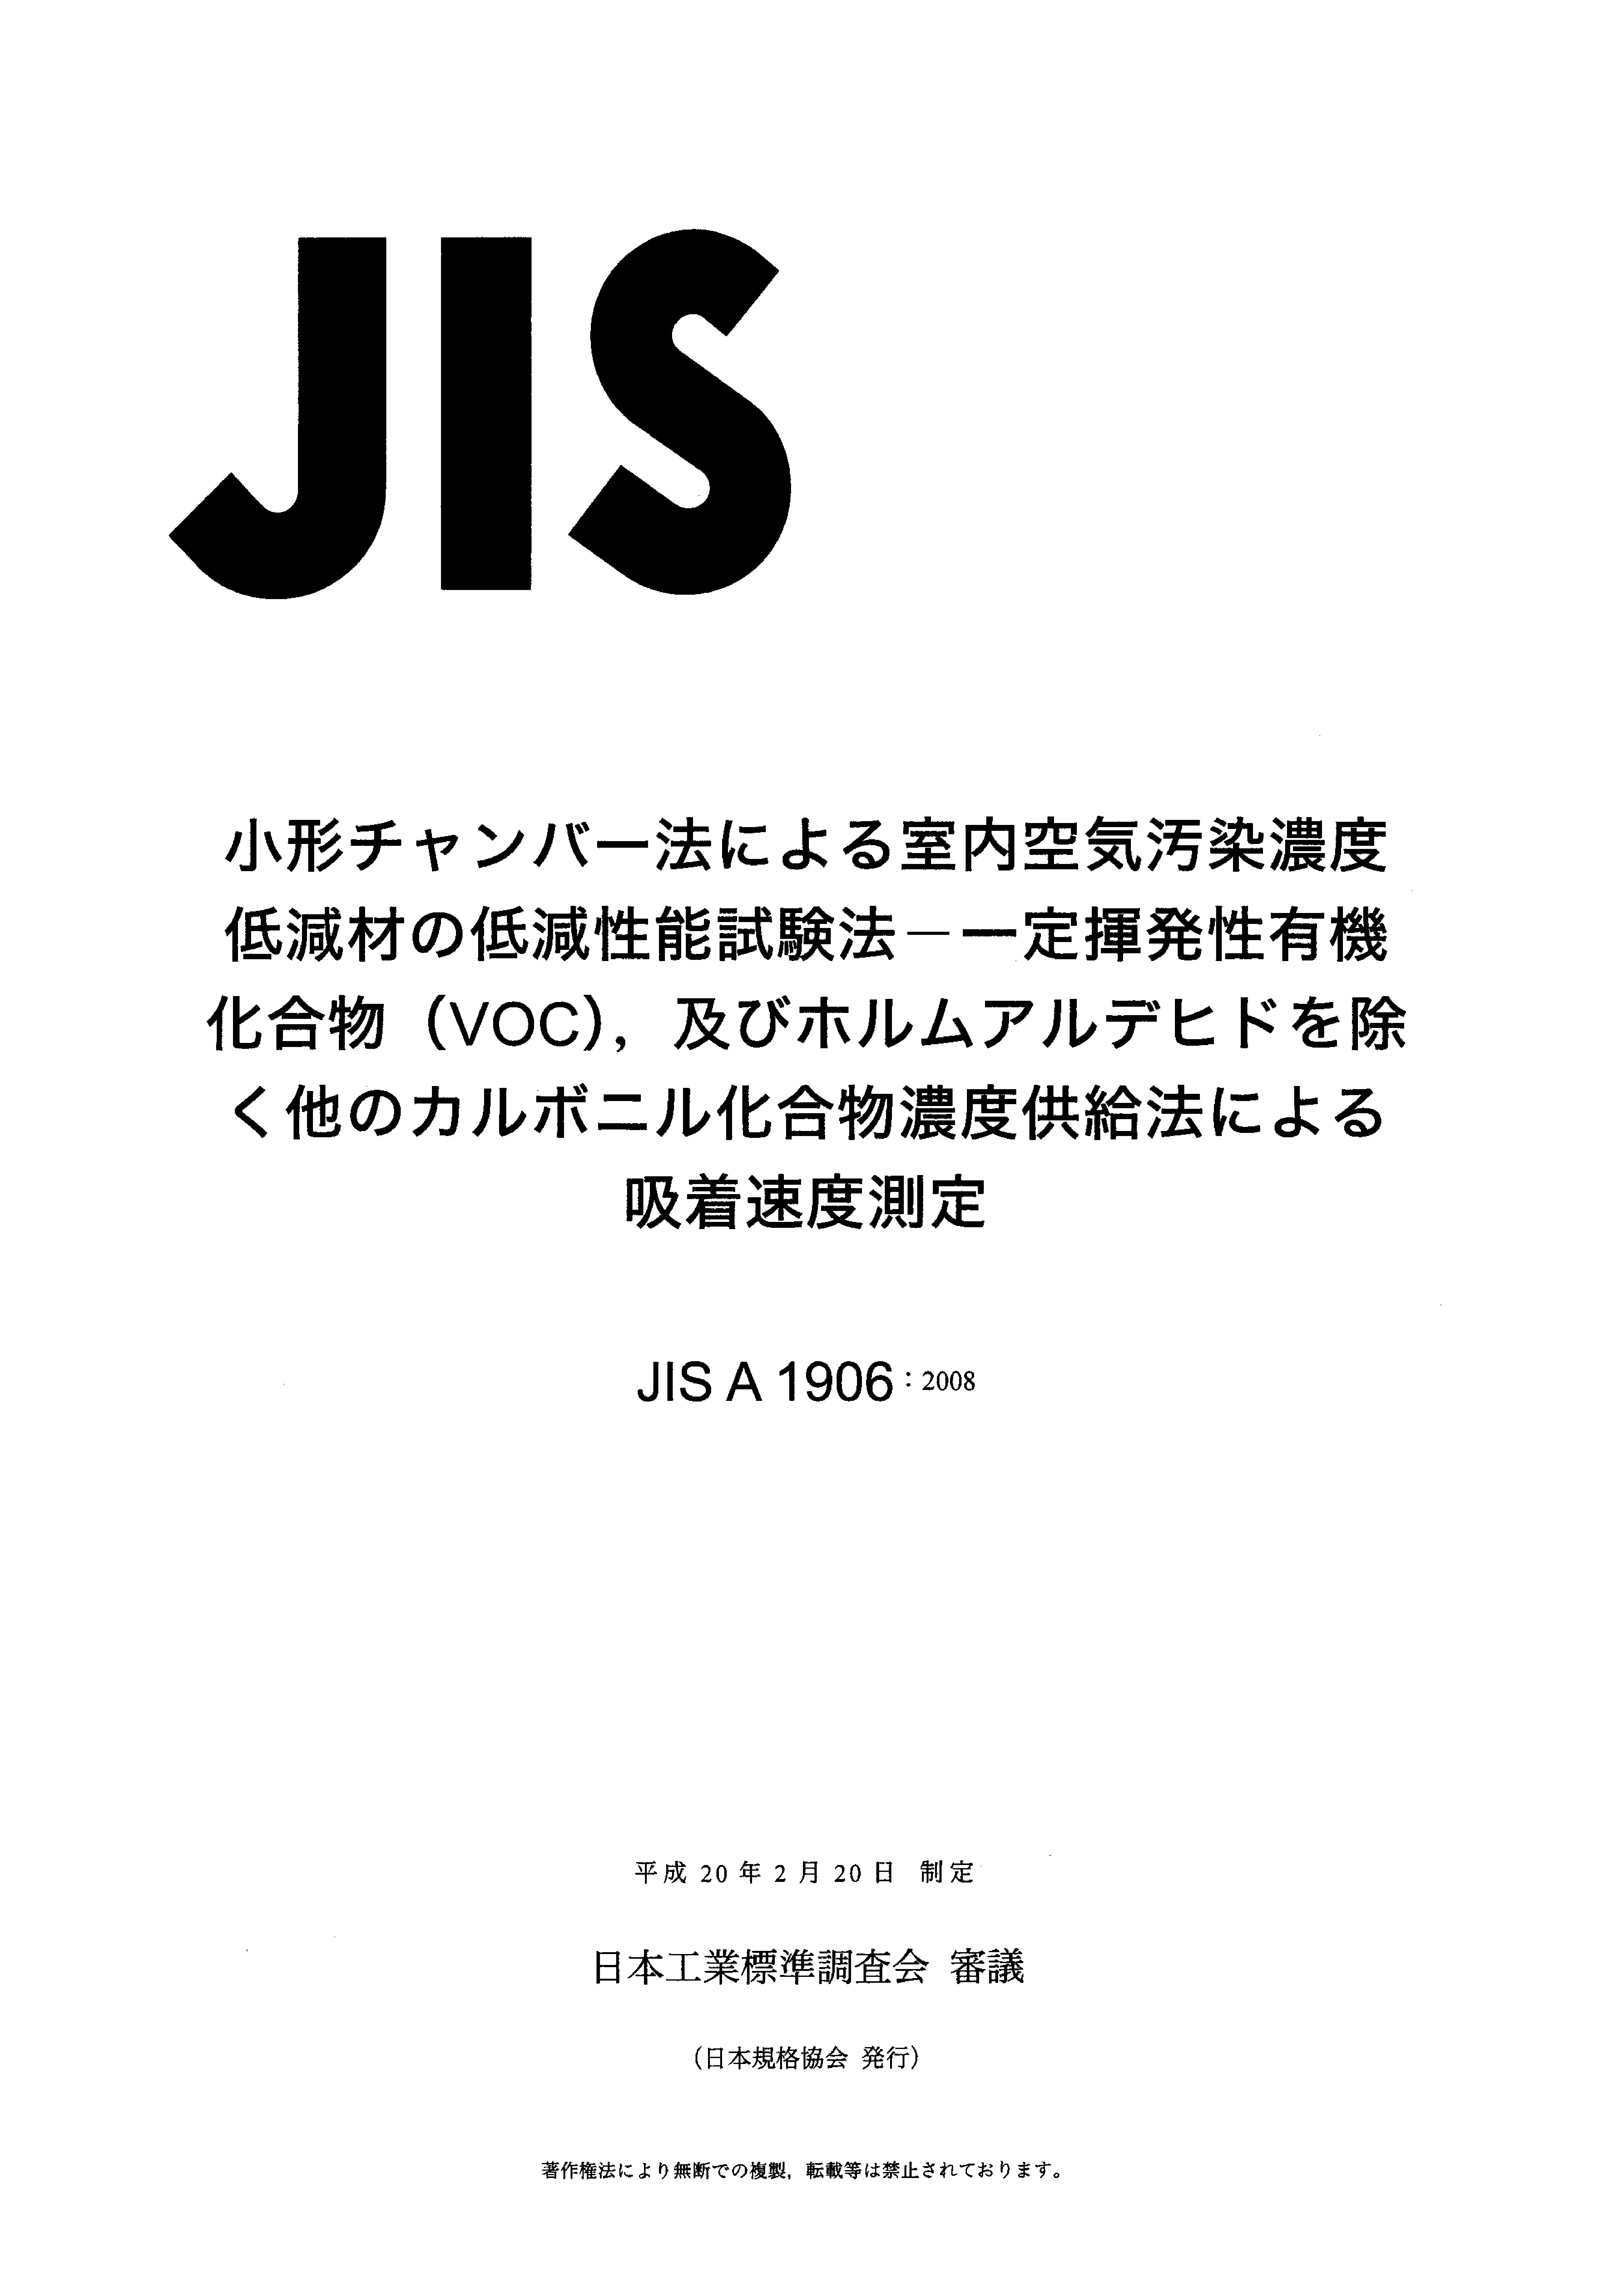 JIS A 1906:2008封面图